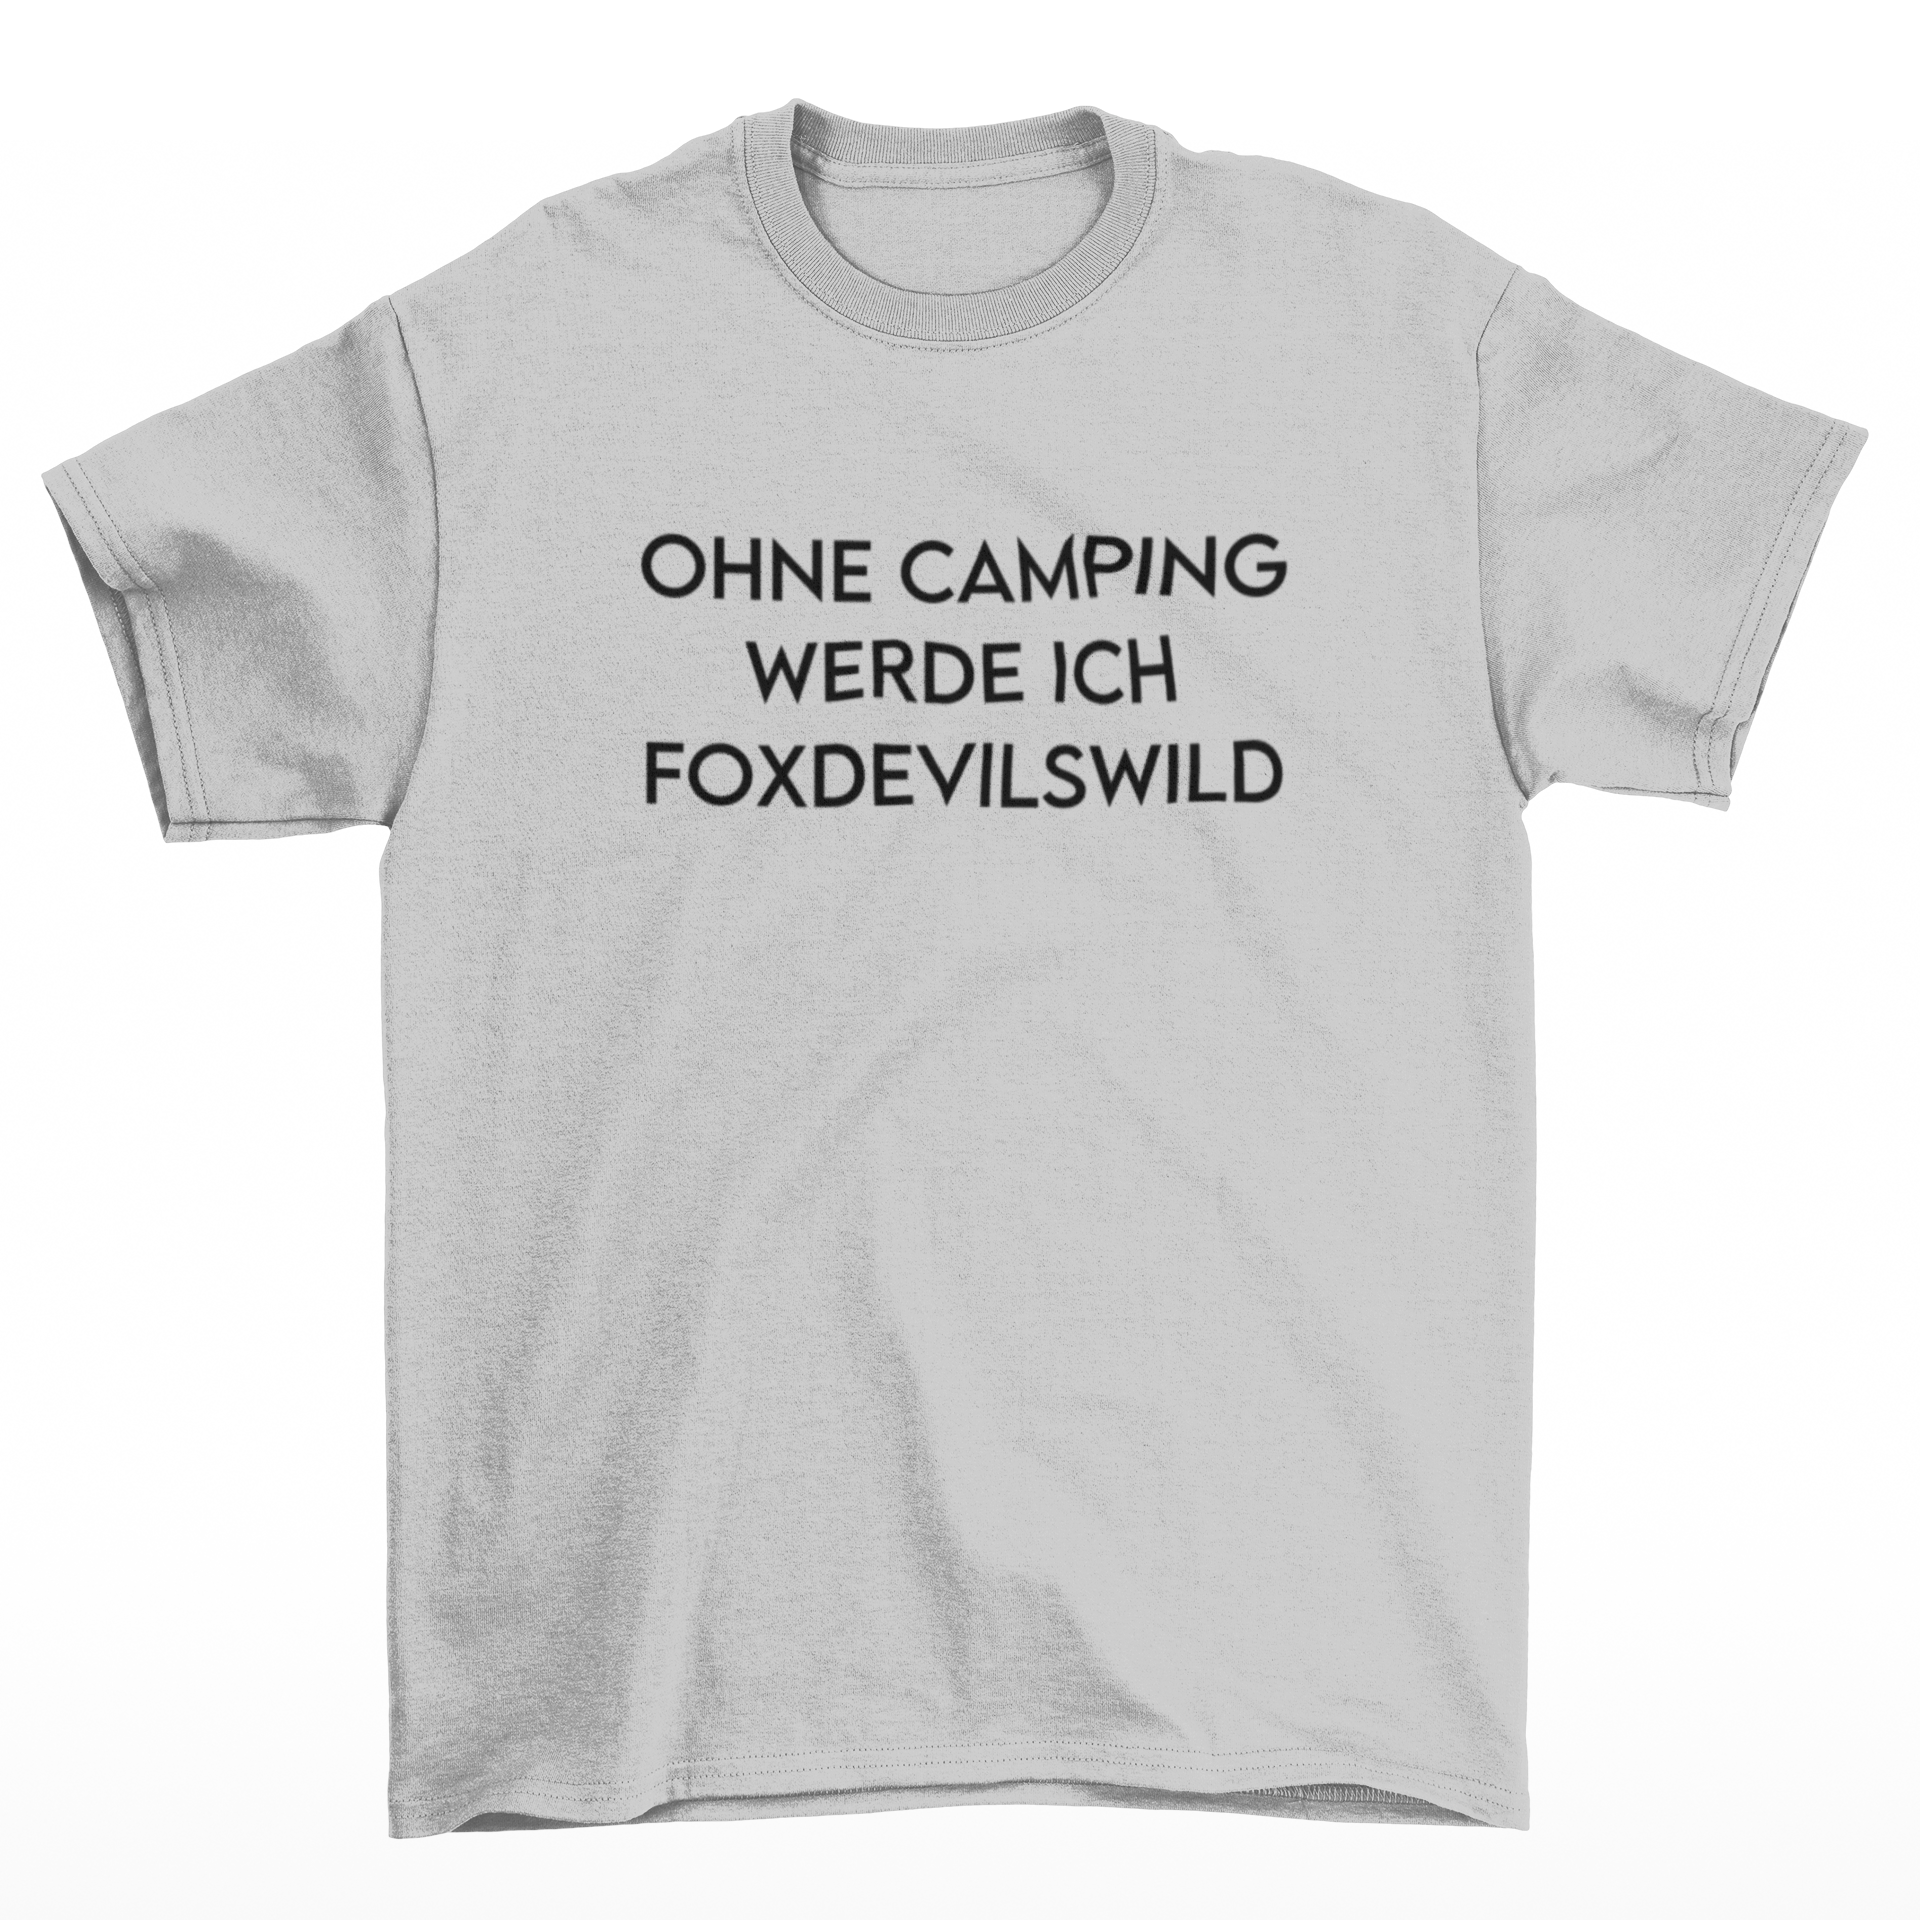 Ohne Camping werde ich foxdevilswild  - T-Shirt